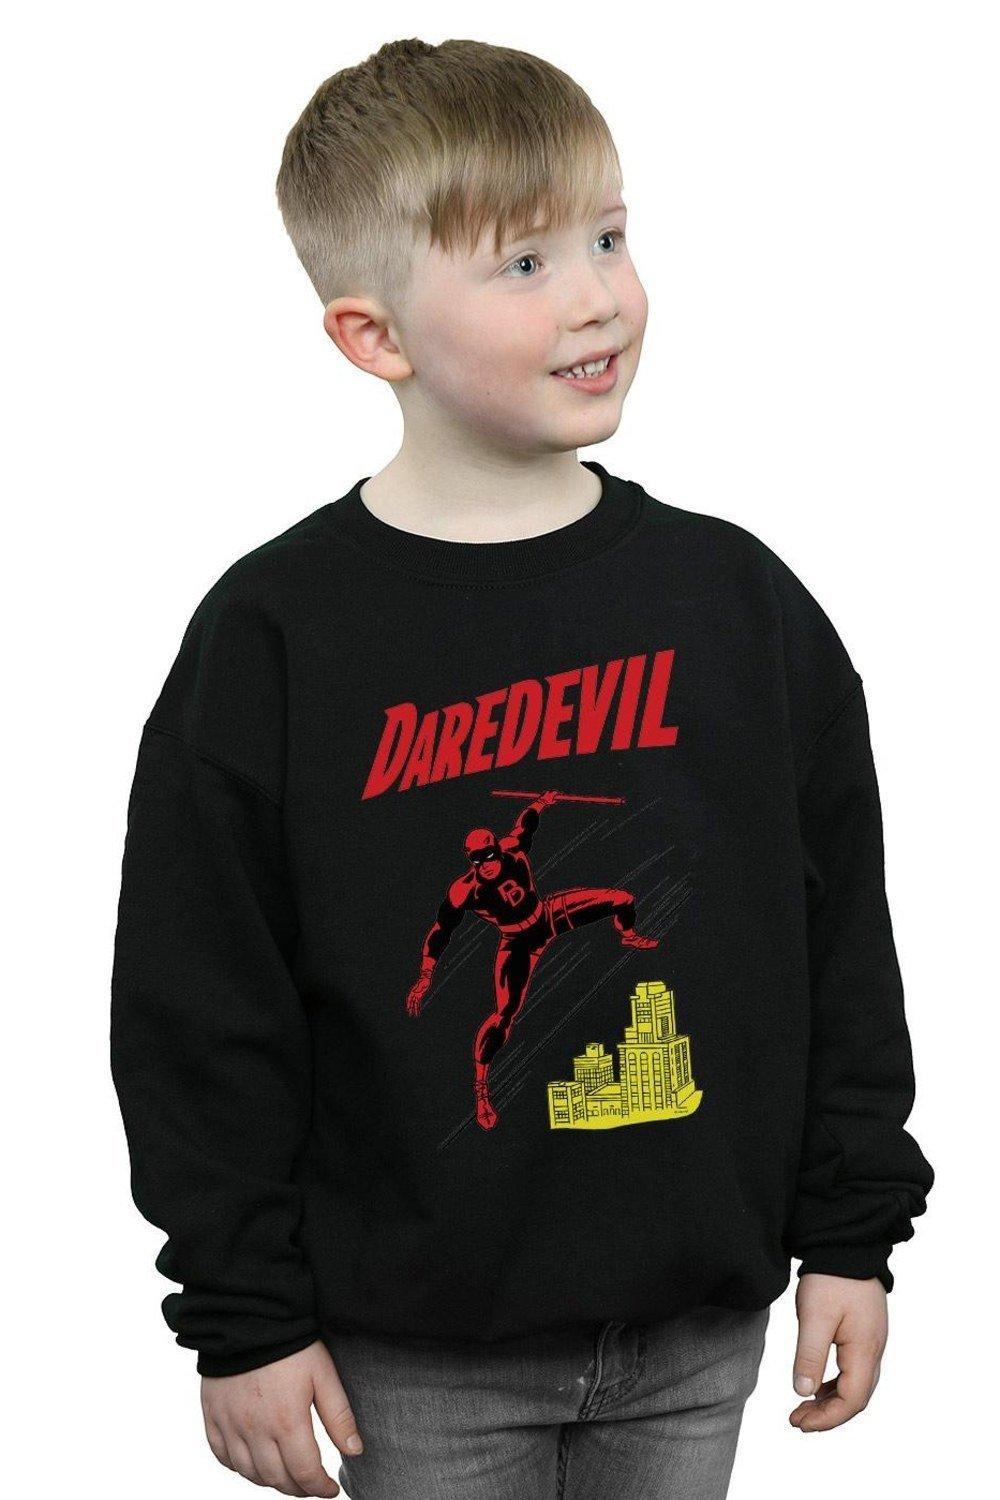 Daredevil Rooftop Sweatshirt